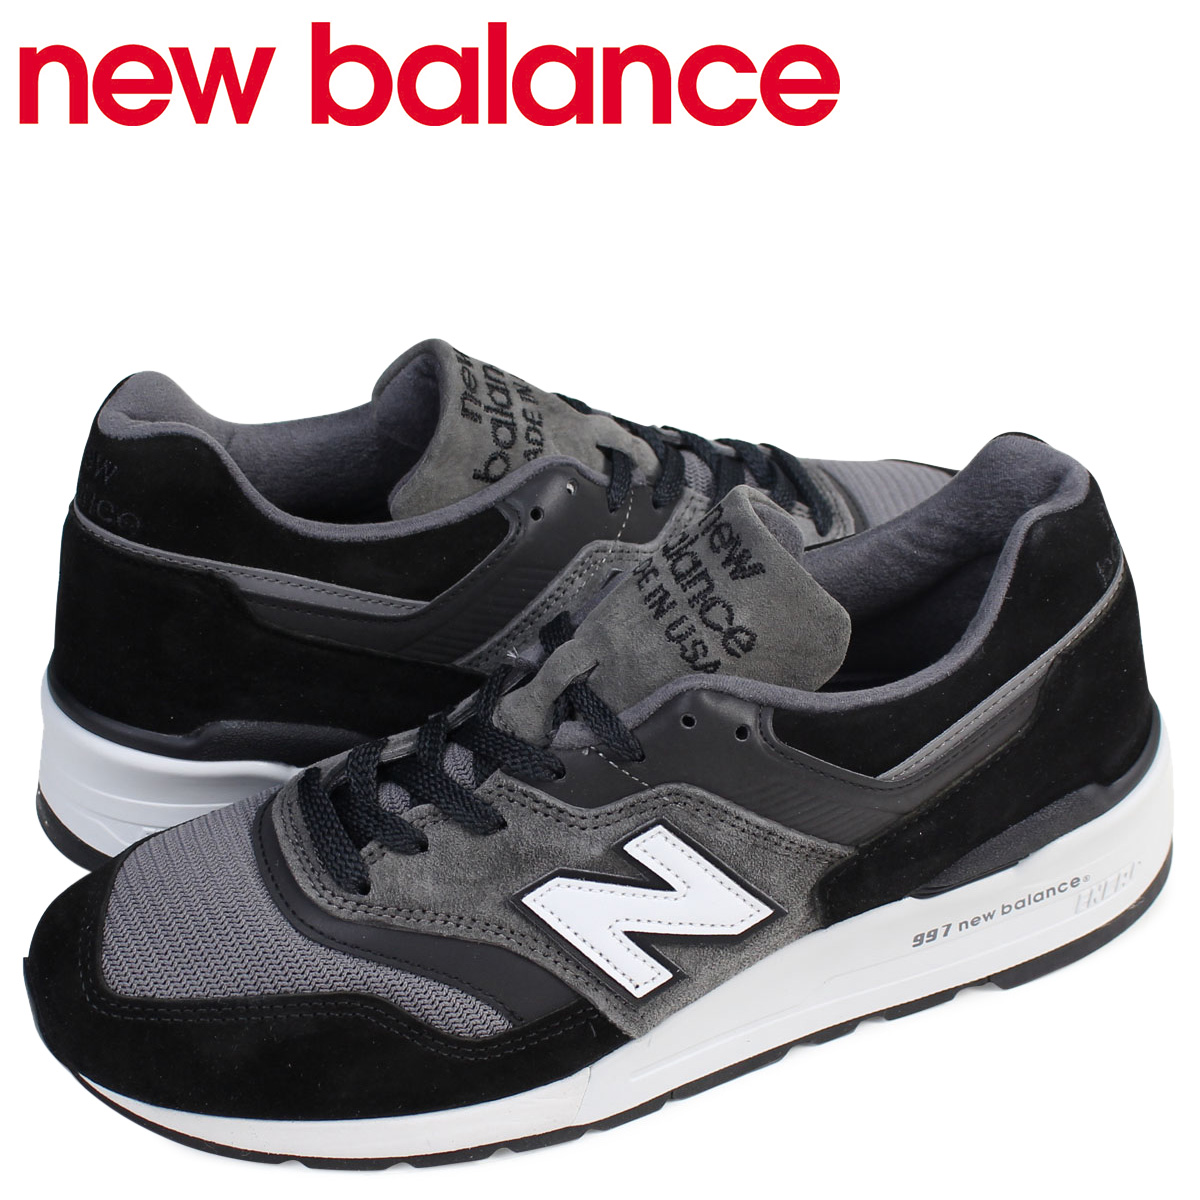 new balance 997 shop online